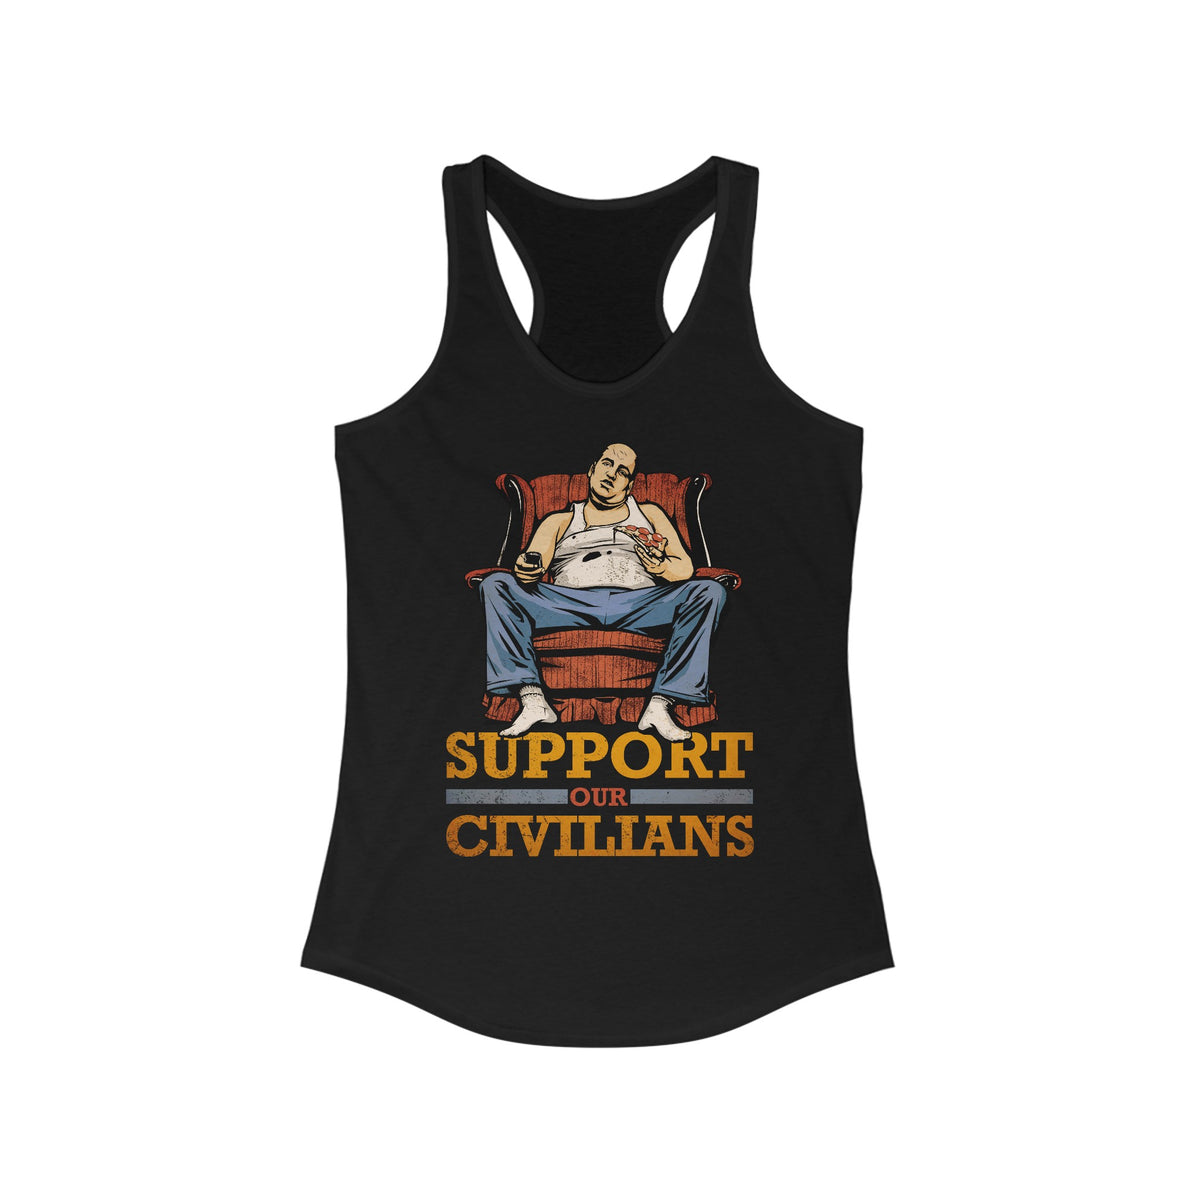 Support Our Civilians - Women's Racerback Tank